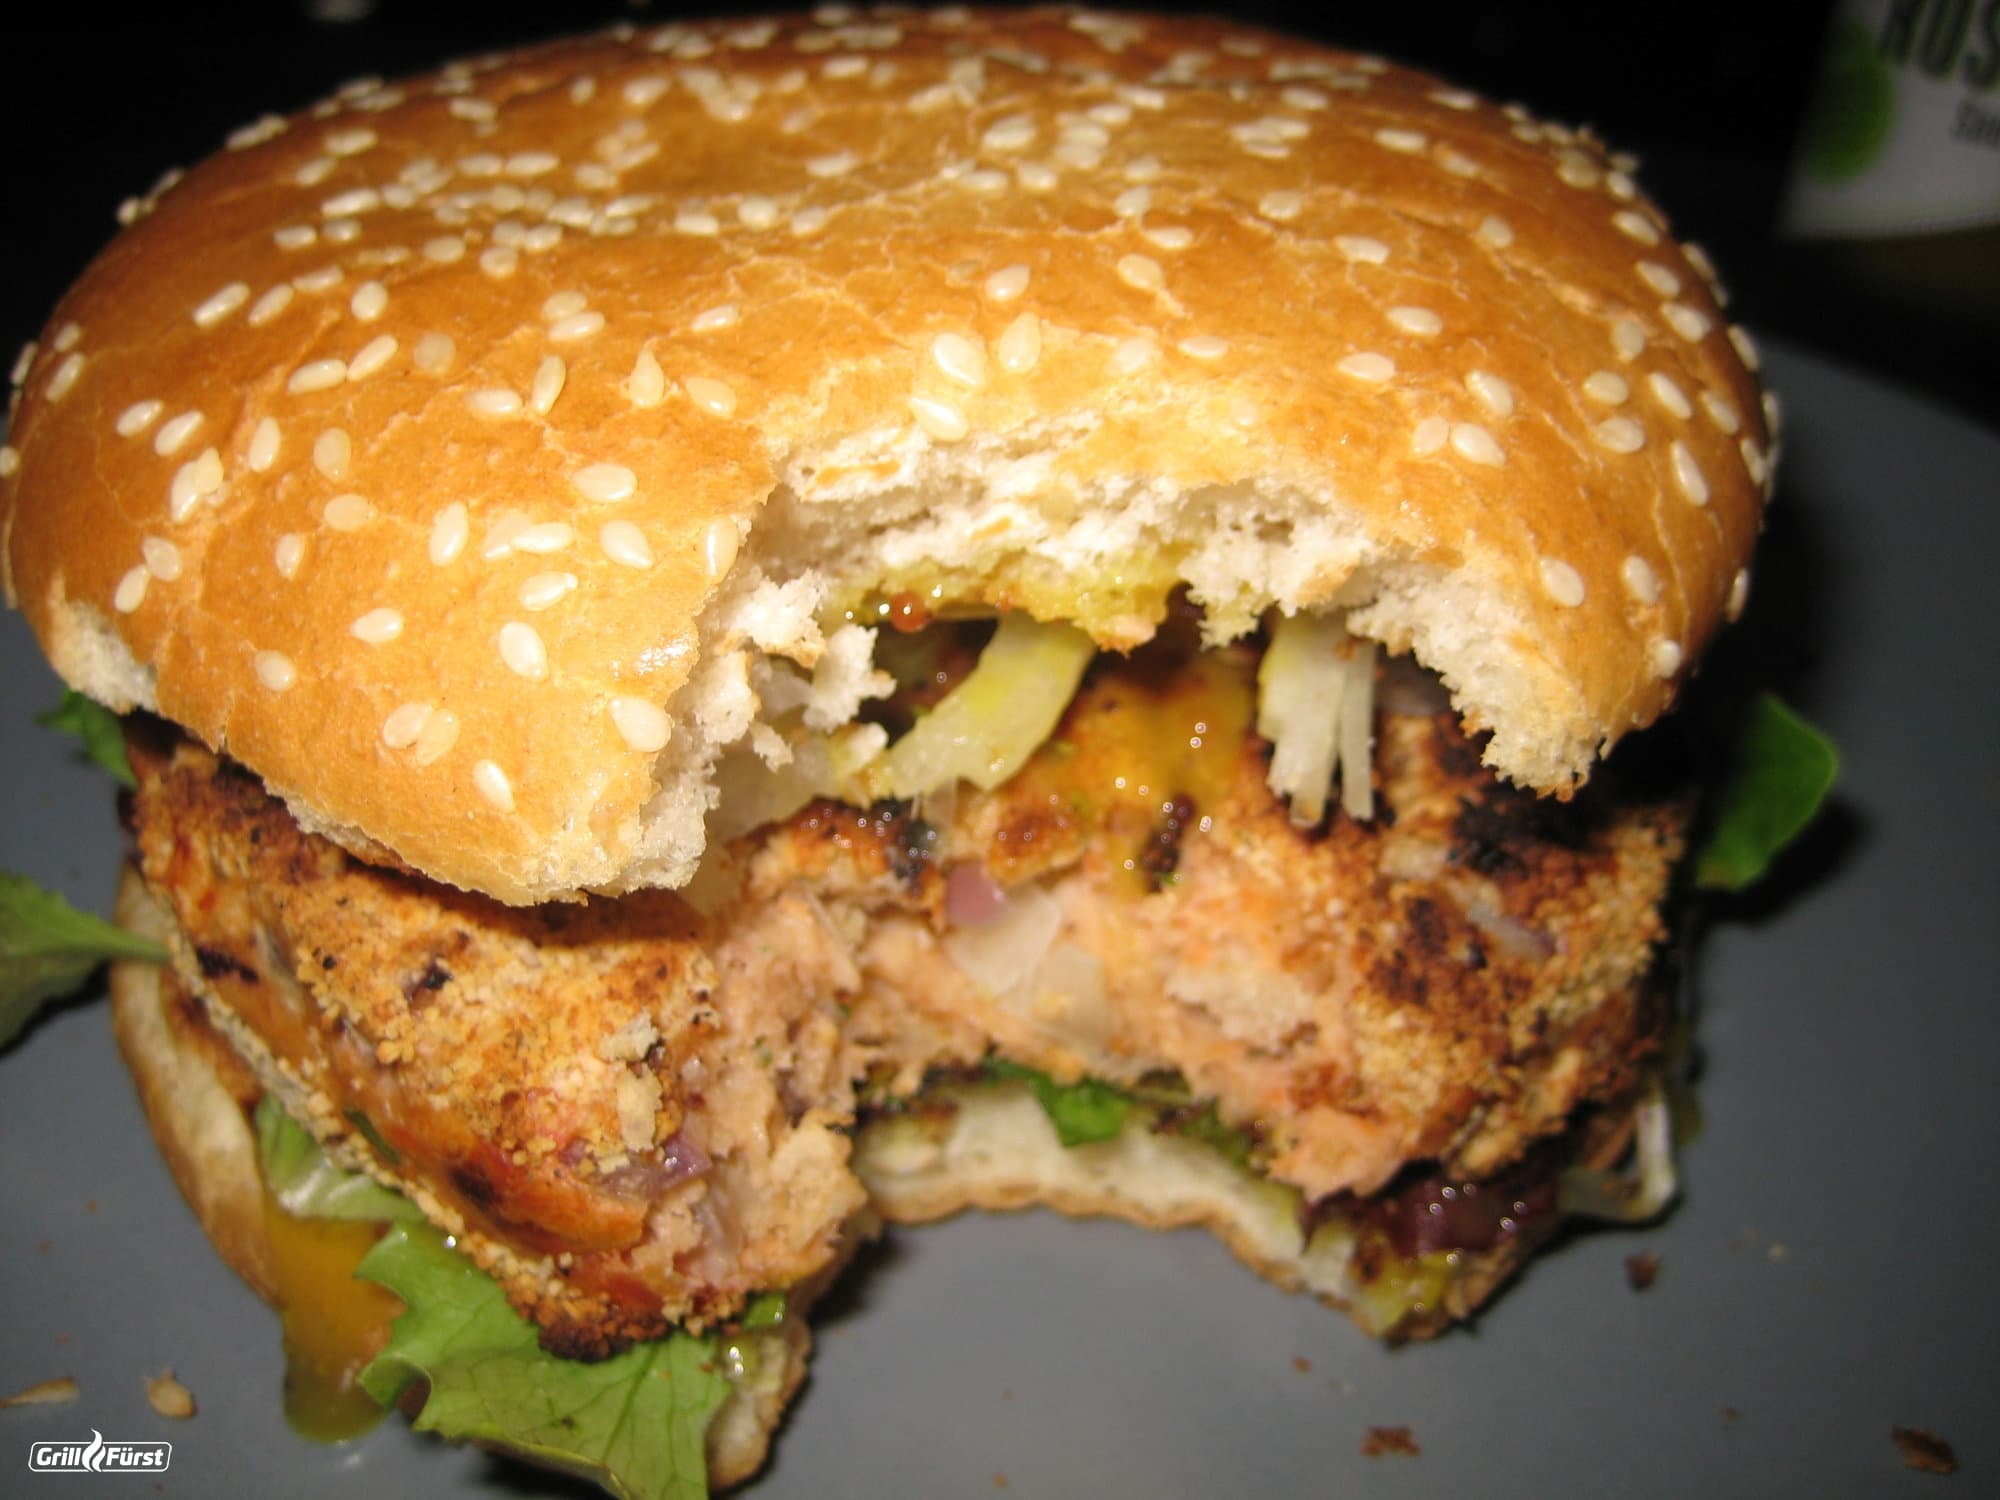 Bremer vom Grill – die Fischvariante des Hamburgers